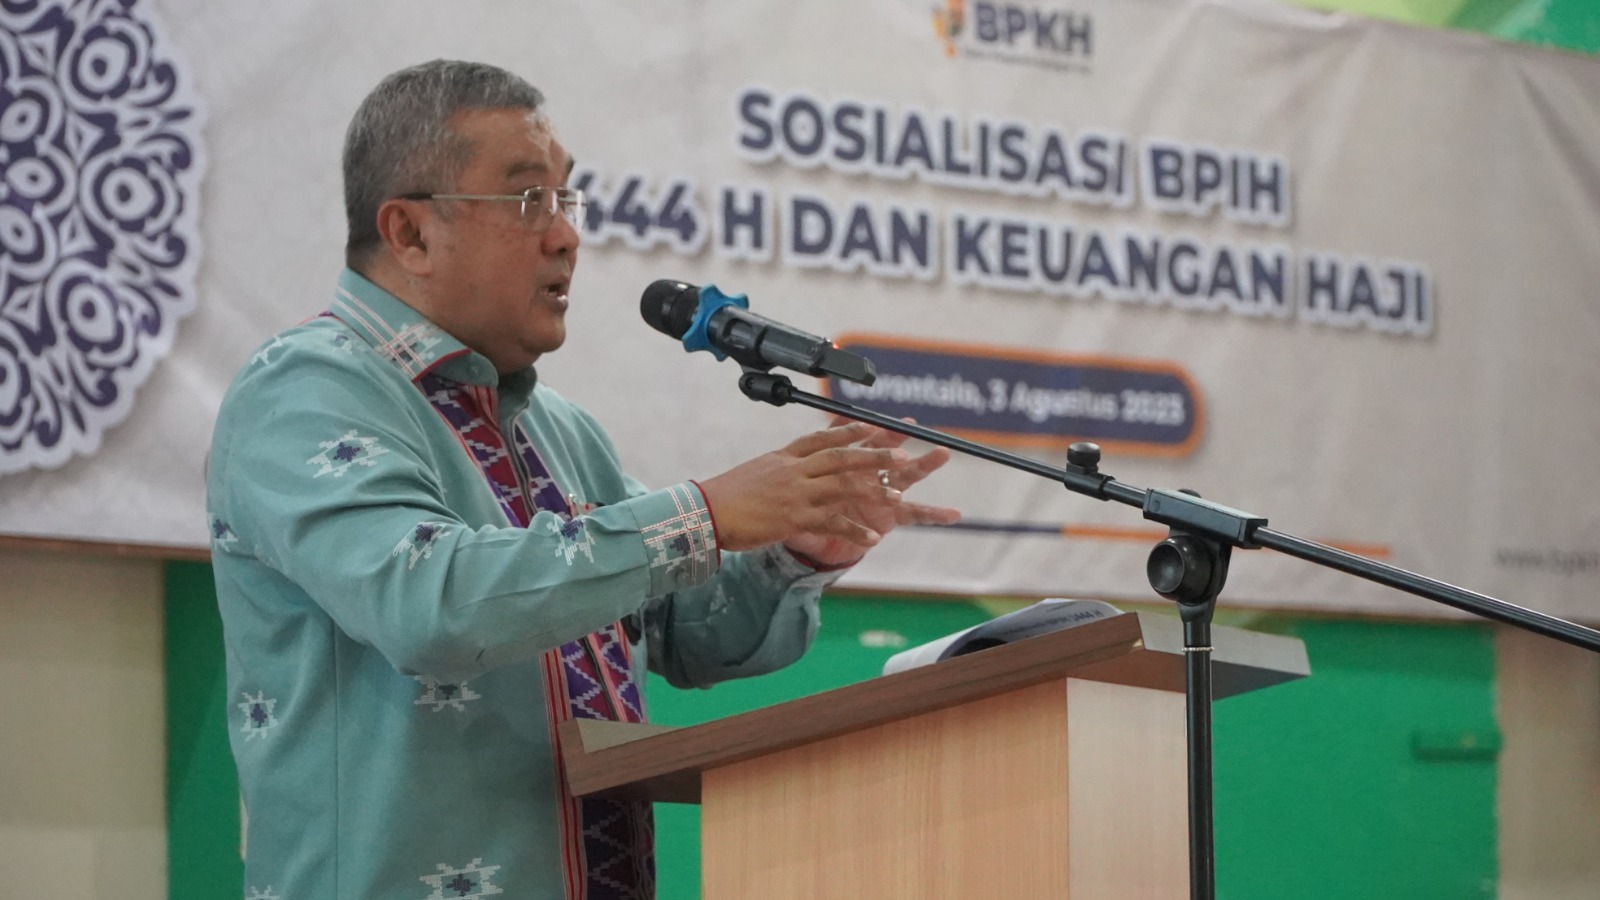 Gelar Sosialisasi di Gorontalo, BPKH kenalkan Anak Perusahaan BPKH di Arab Saudi